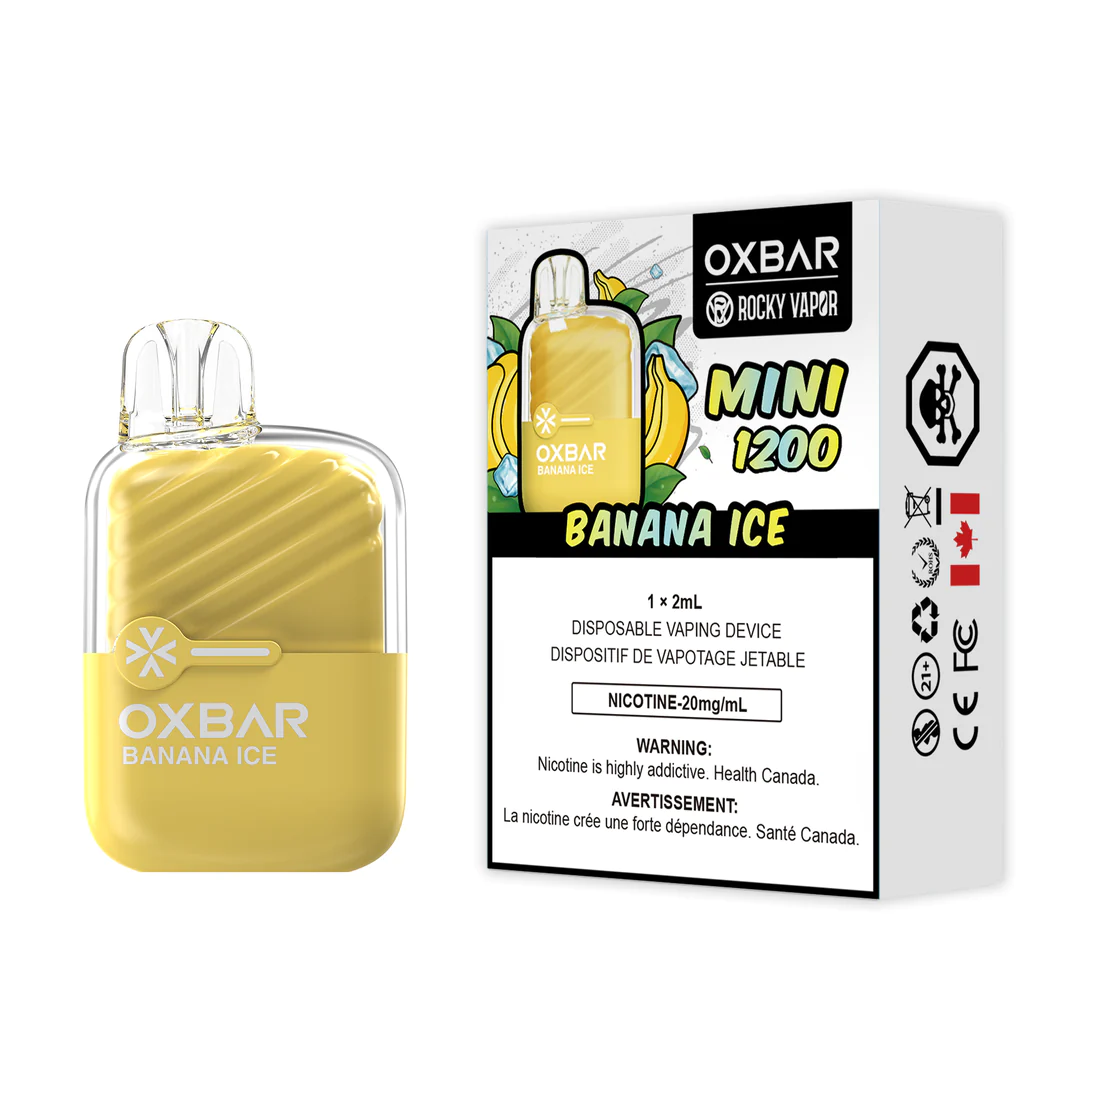 Banana Ice - B.C. Compliance Rocky Vapor Oxbar Mini 1200 Puffs Disposable Vape Ct-5